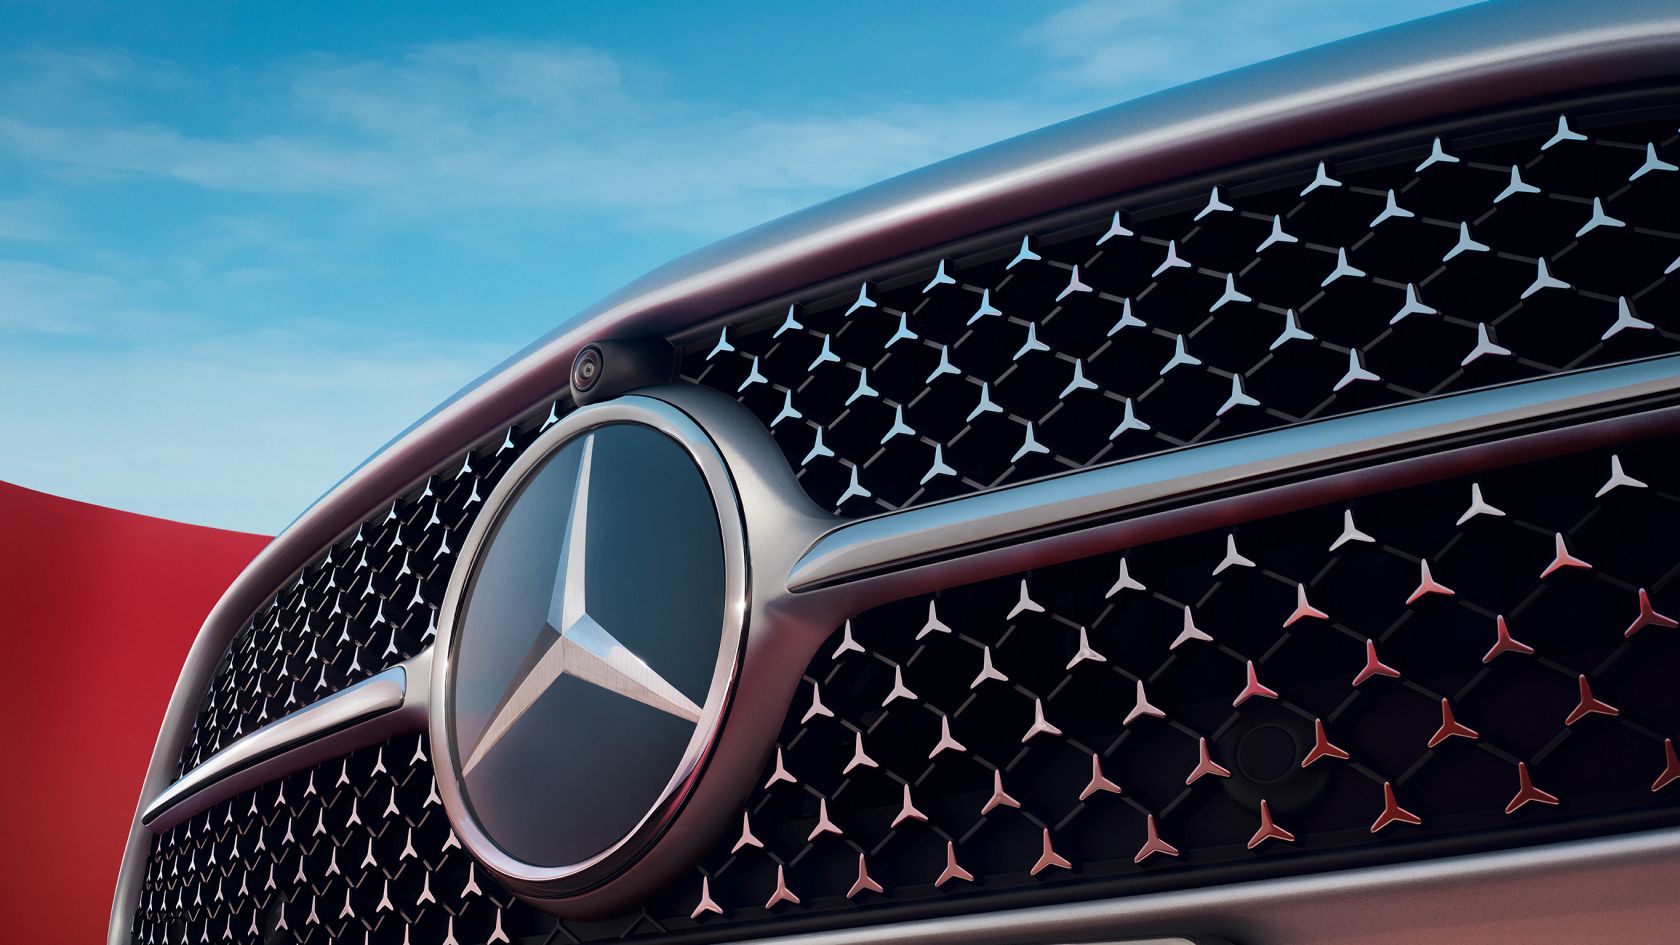 Mercedes-Benz C-class Седан Главные особенности автомобиля #2